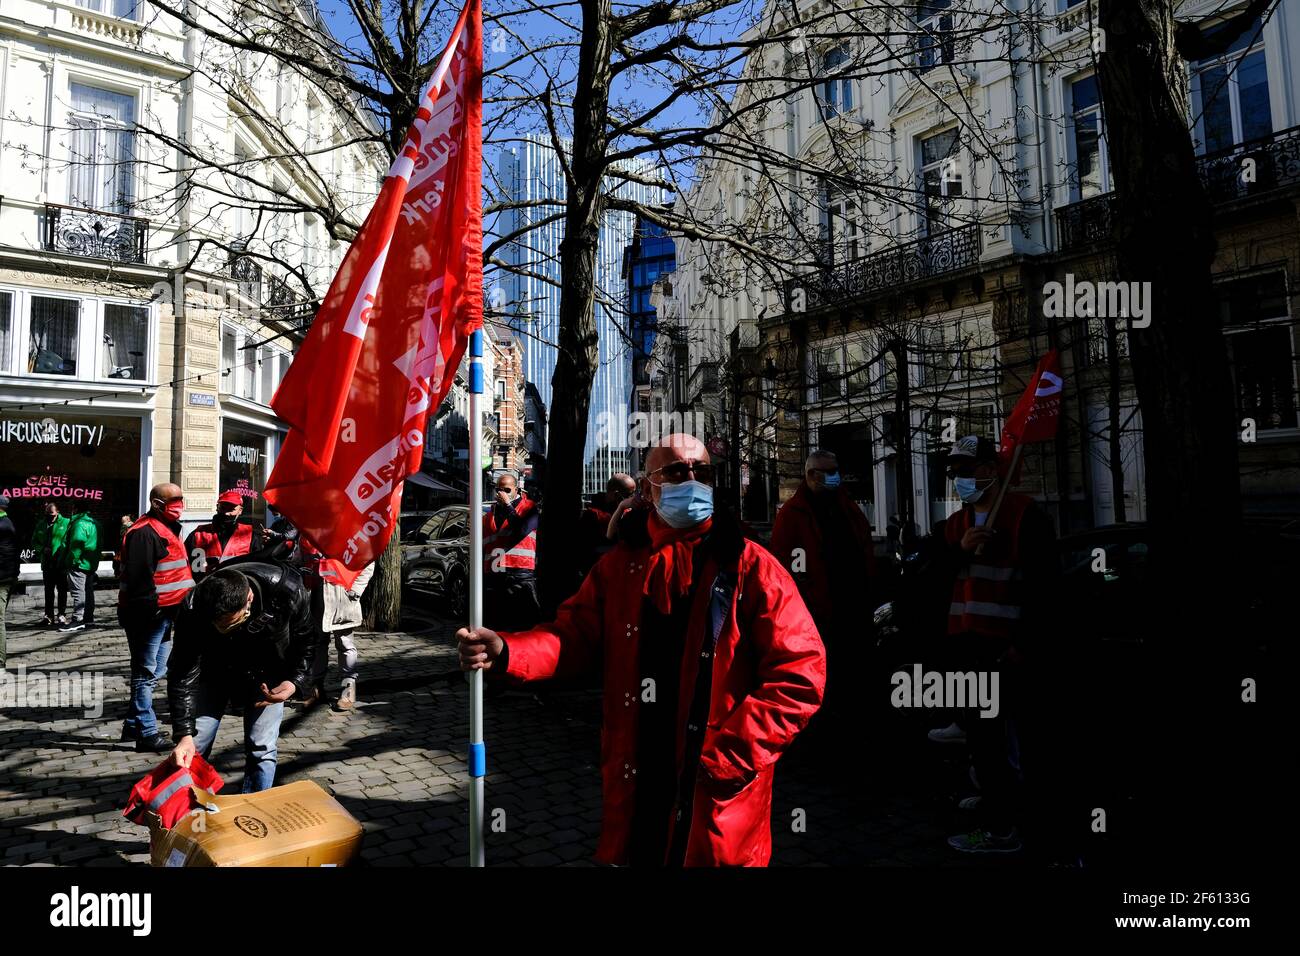 Bruxelles, Belgique. 29 mars 2021. Des représentants des syndicats participent à la manifestation dans le cadre de la grève nationale d'un jour des travailleurs du secteur privé. Crédit: ALEXANDROS MICHAILIDIS/Alamy Live News Banque D'Images